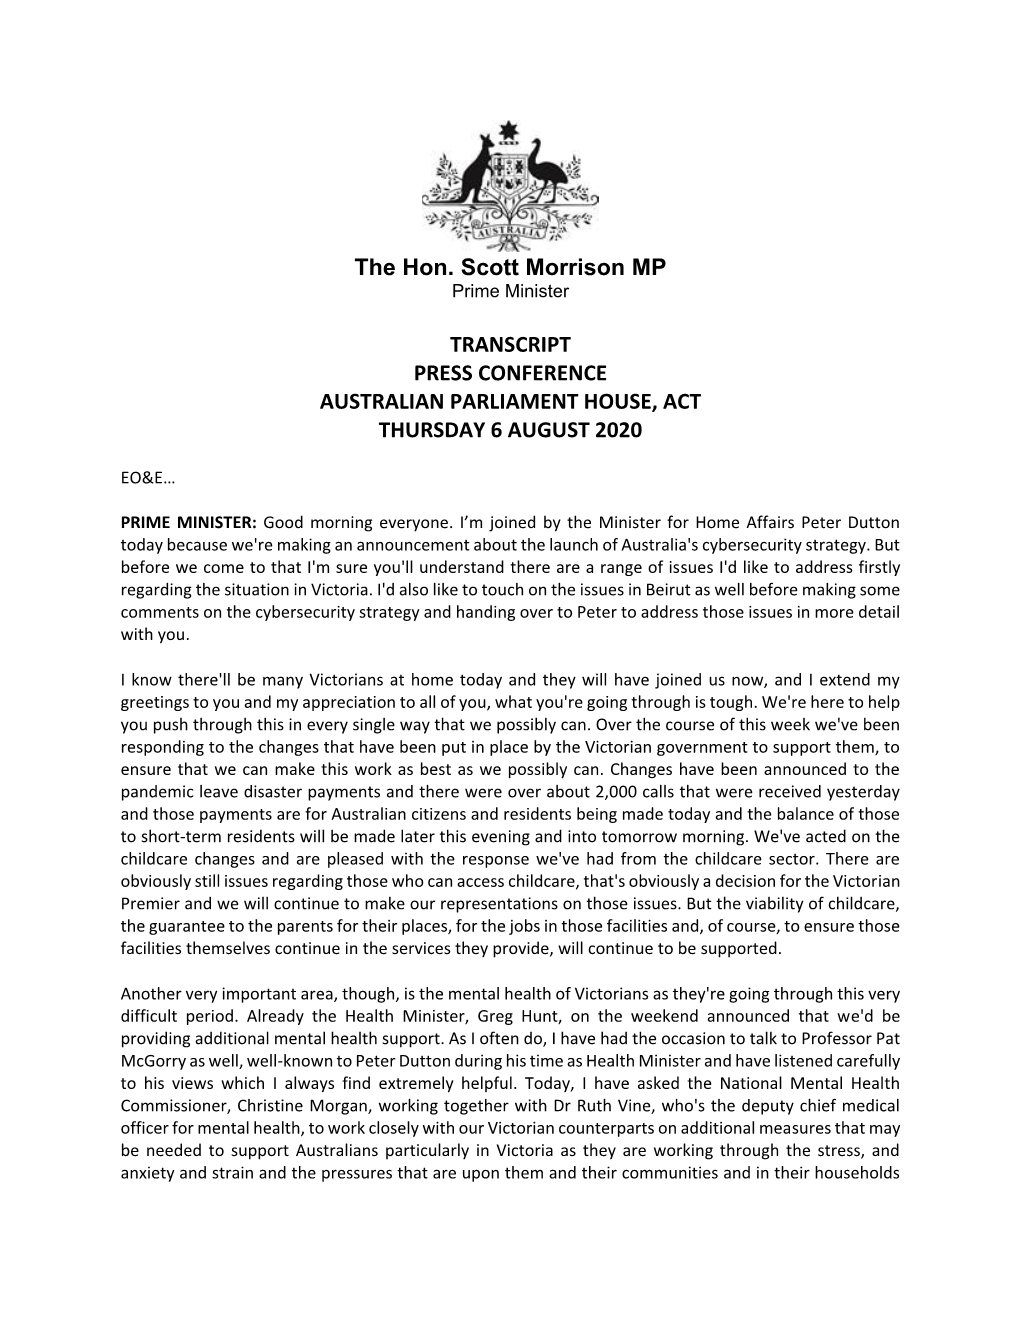 The Hon. Scott Morrison MP TRANSCRIPT PRESS CONFERENCE AUSTRALIAN PARLIAMENT HOUSE, ACT THURSDAY 6 AUGUST 2020